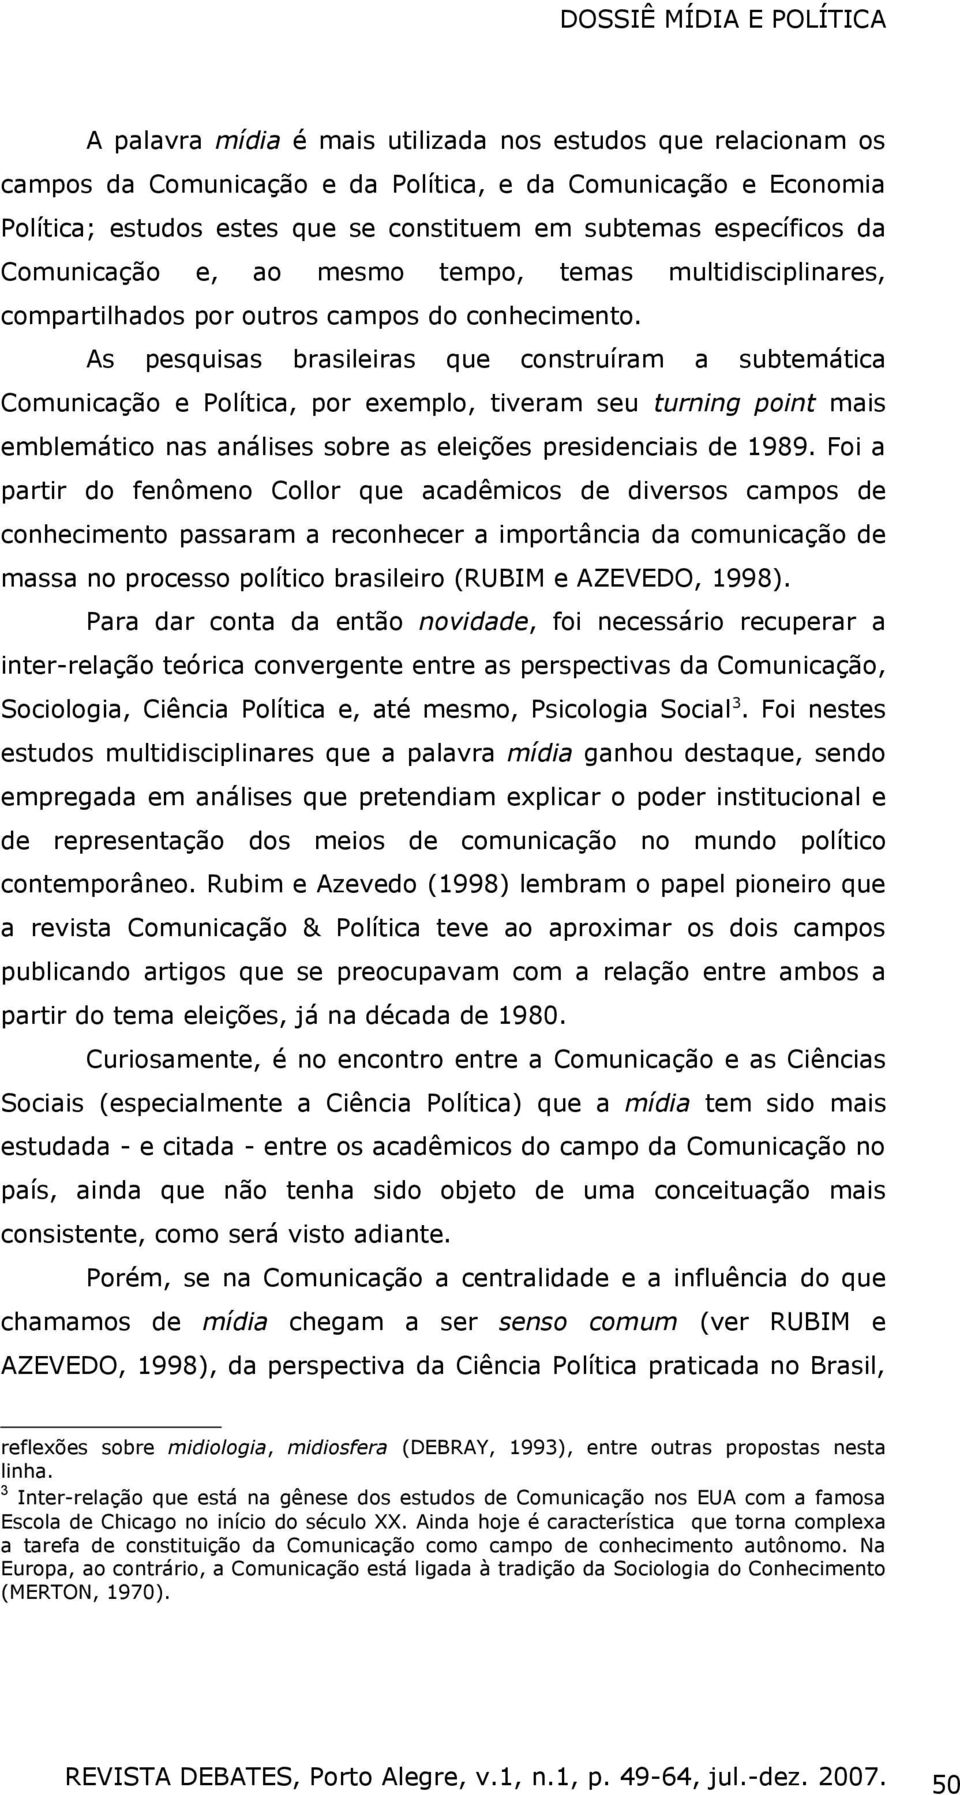 As pesquisas brasileiras que construíram a subtemática Comunicação e Política, por exemplo, tiveram seu turning point mais emblemático nas análises sobre as eleições presidenciais de 1989.